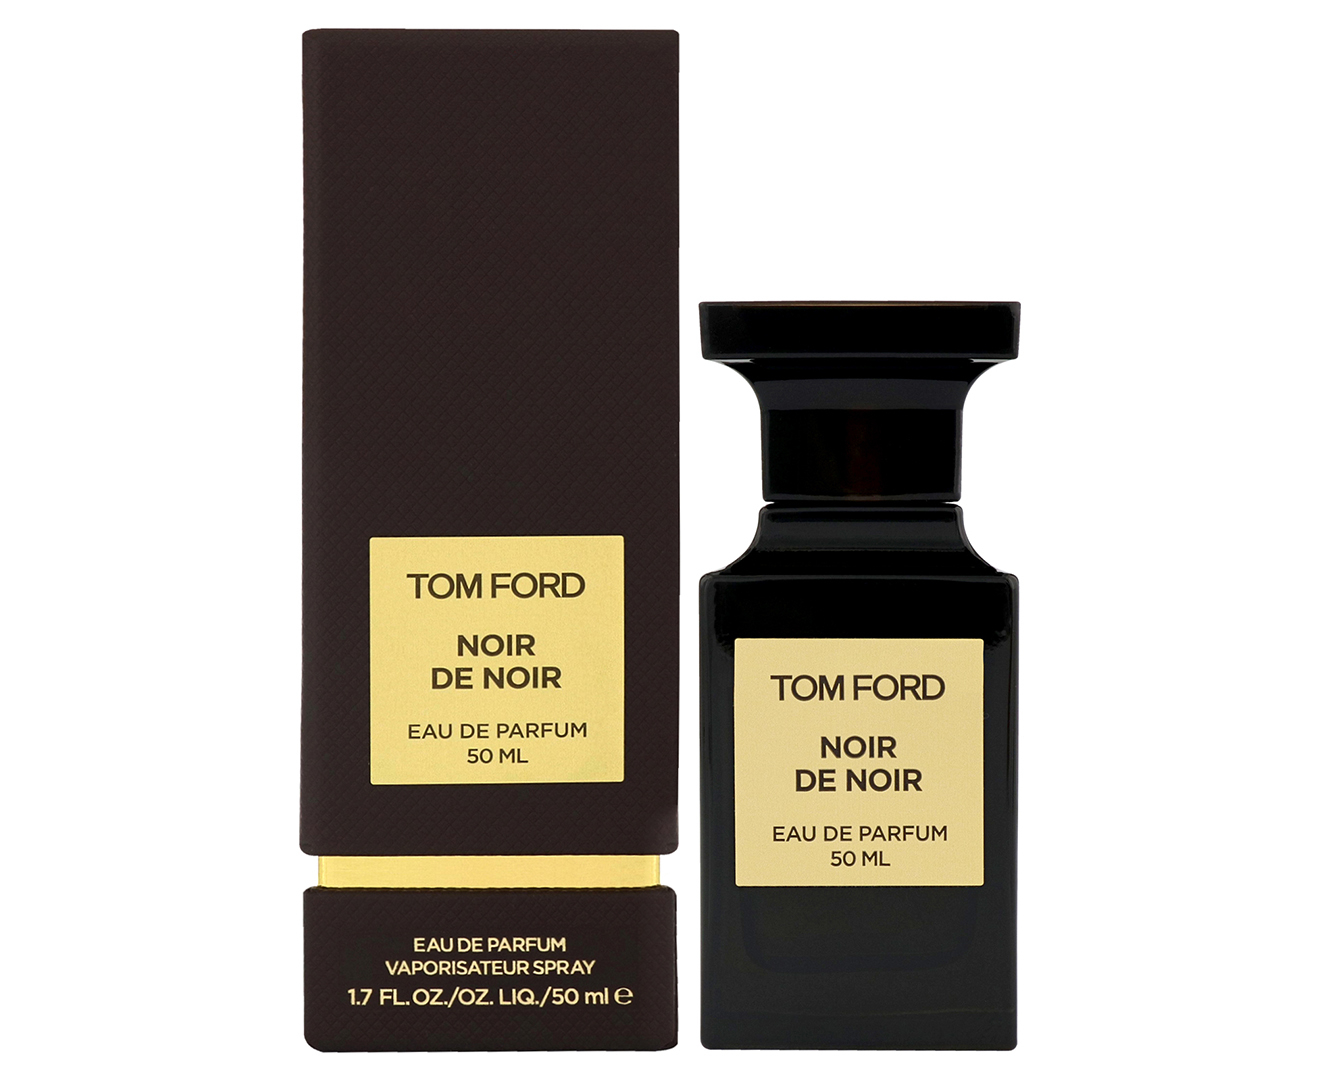 Tom Ford Noir De Noir For Women EDP Perfume 50mL 